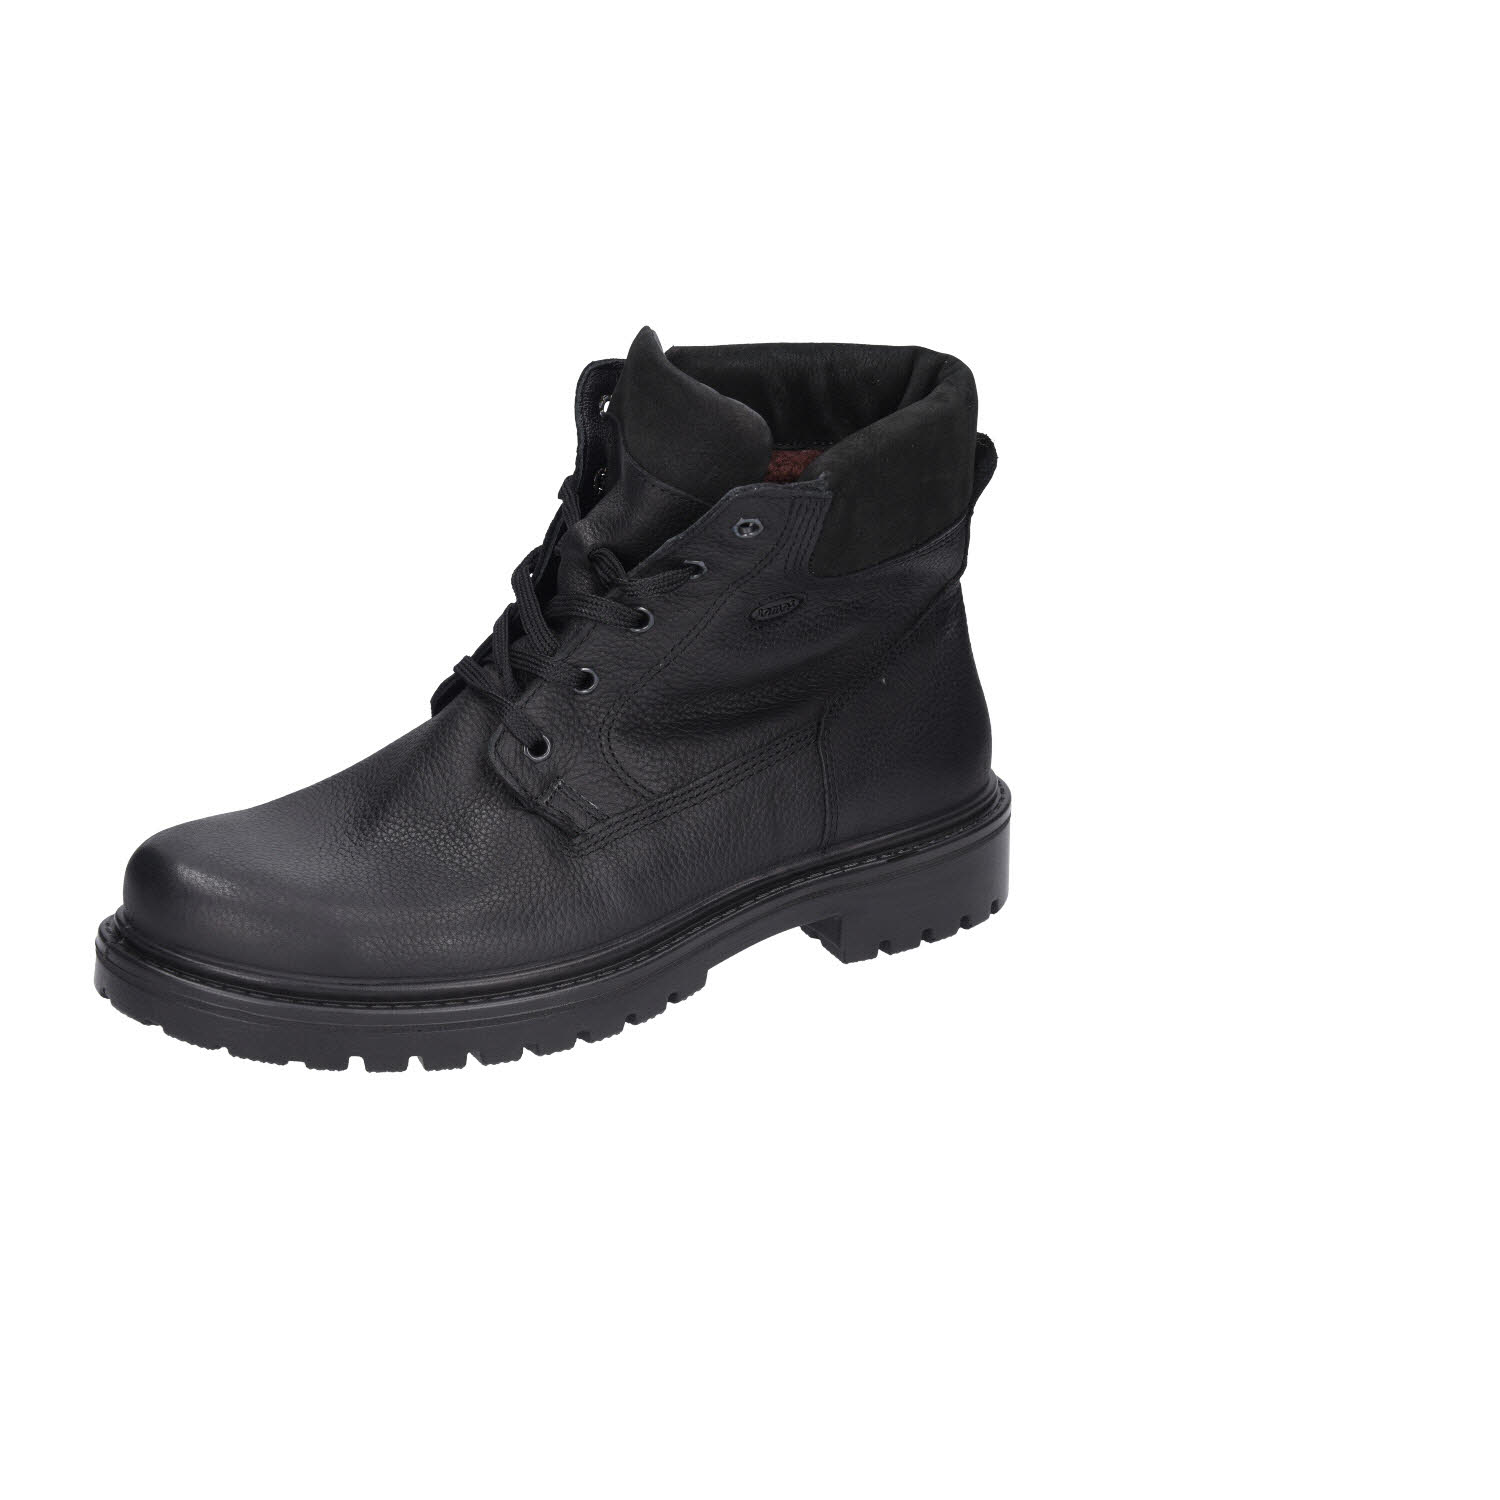 JOMOS Schuhfabrik / Mohr Alpina Boots Black Lammfell schwarz Weite H